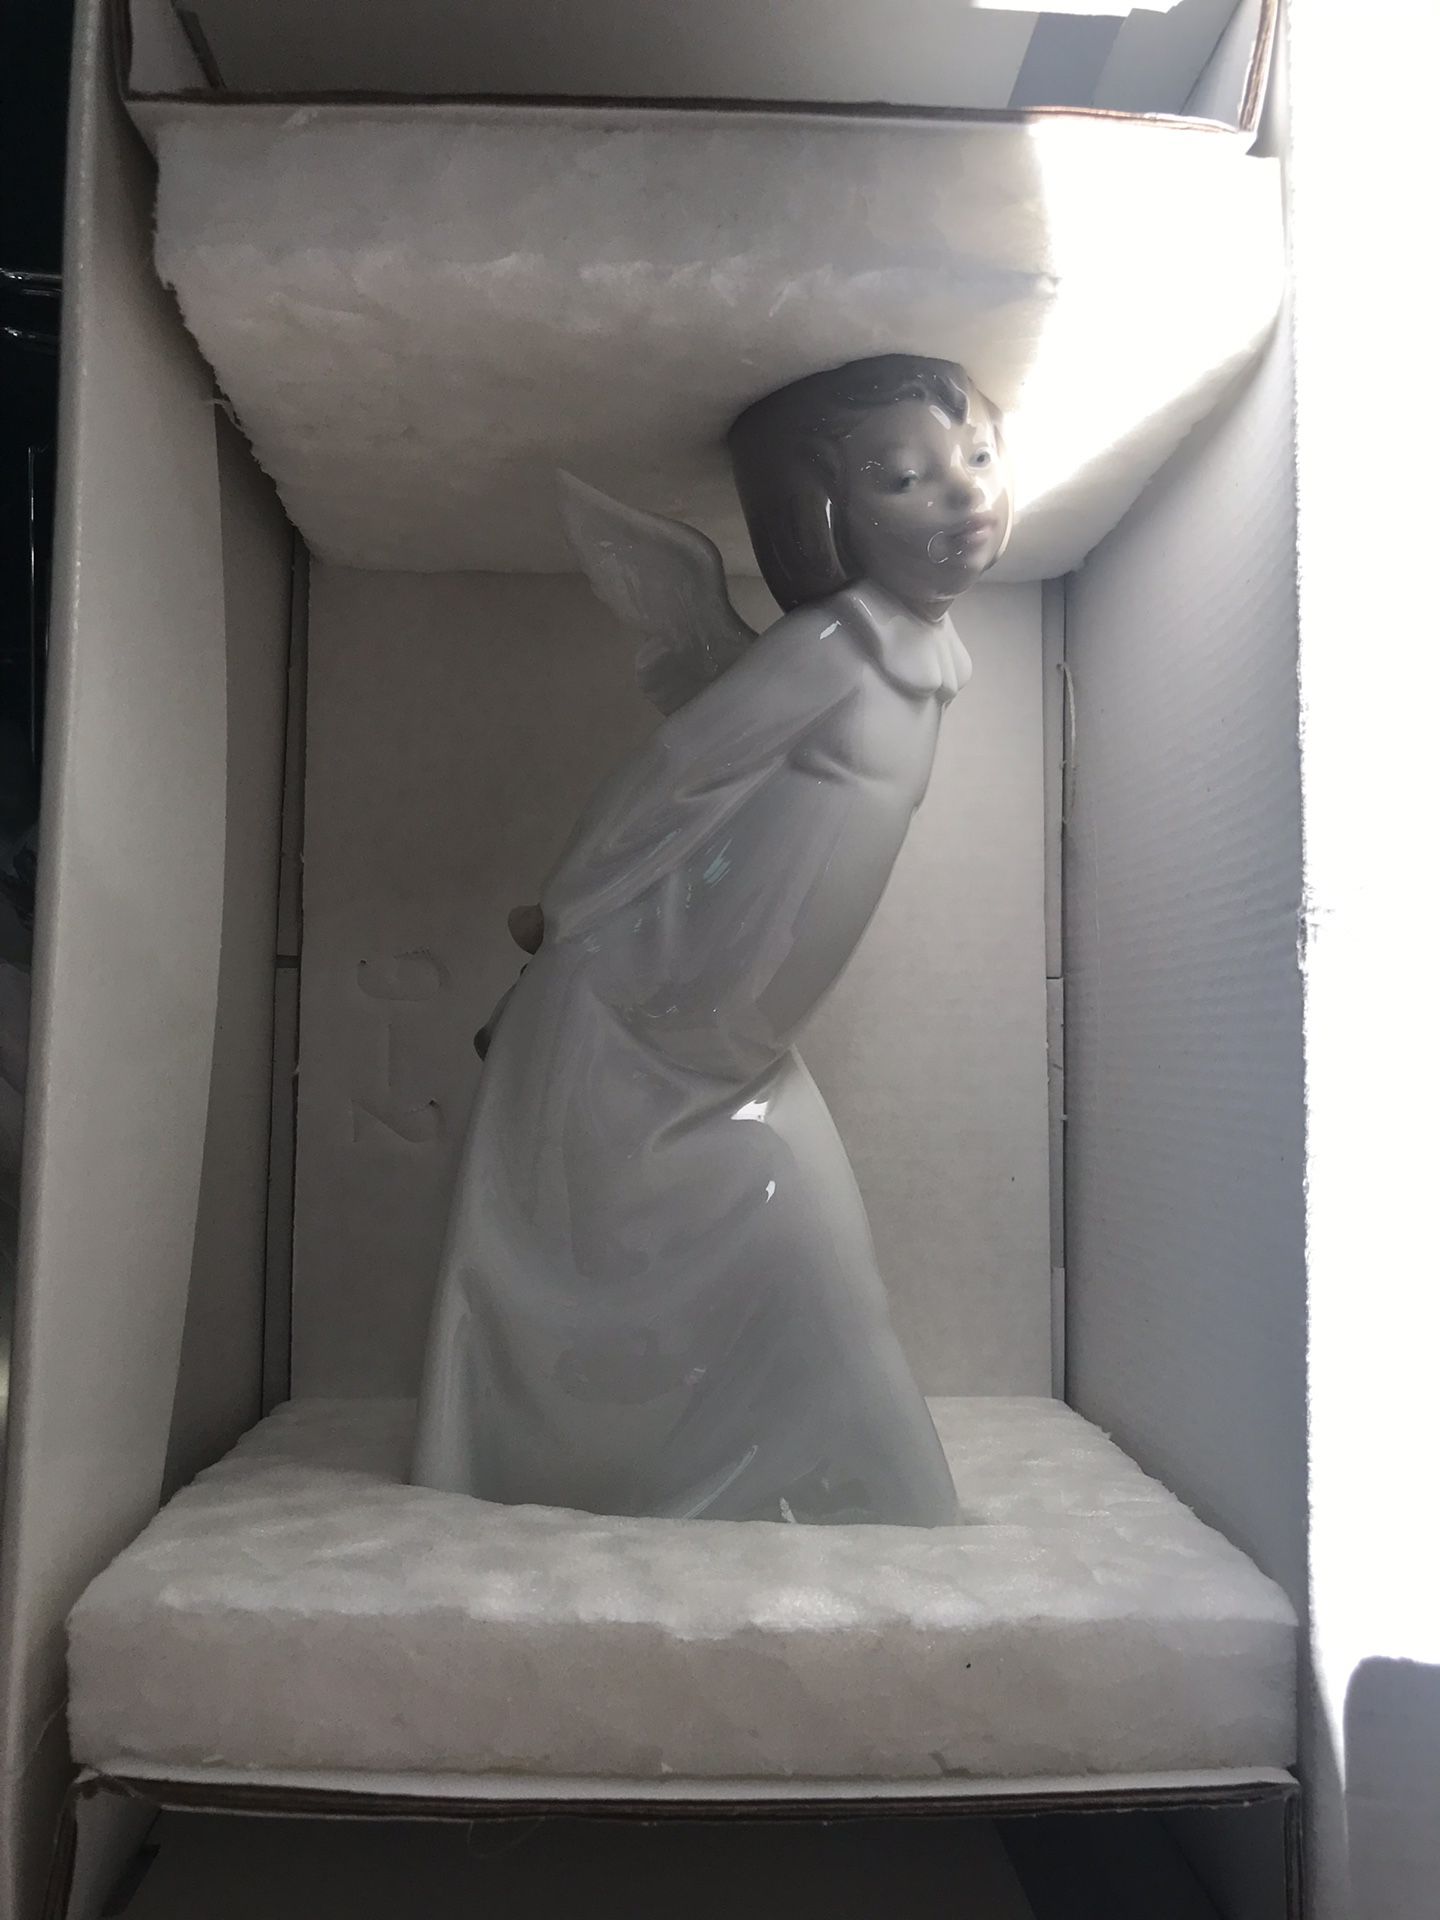 Lladro Angel Figurine